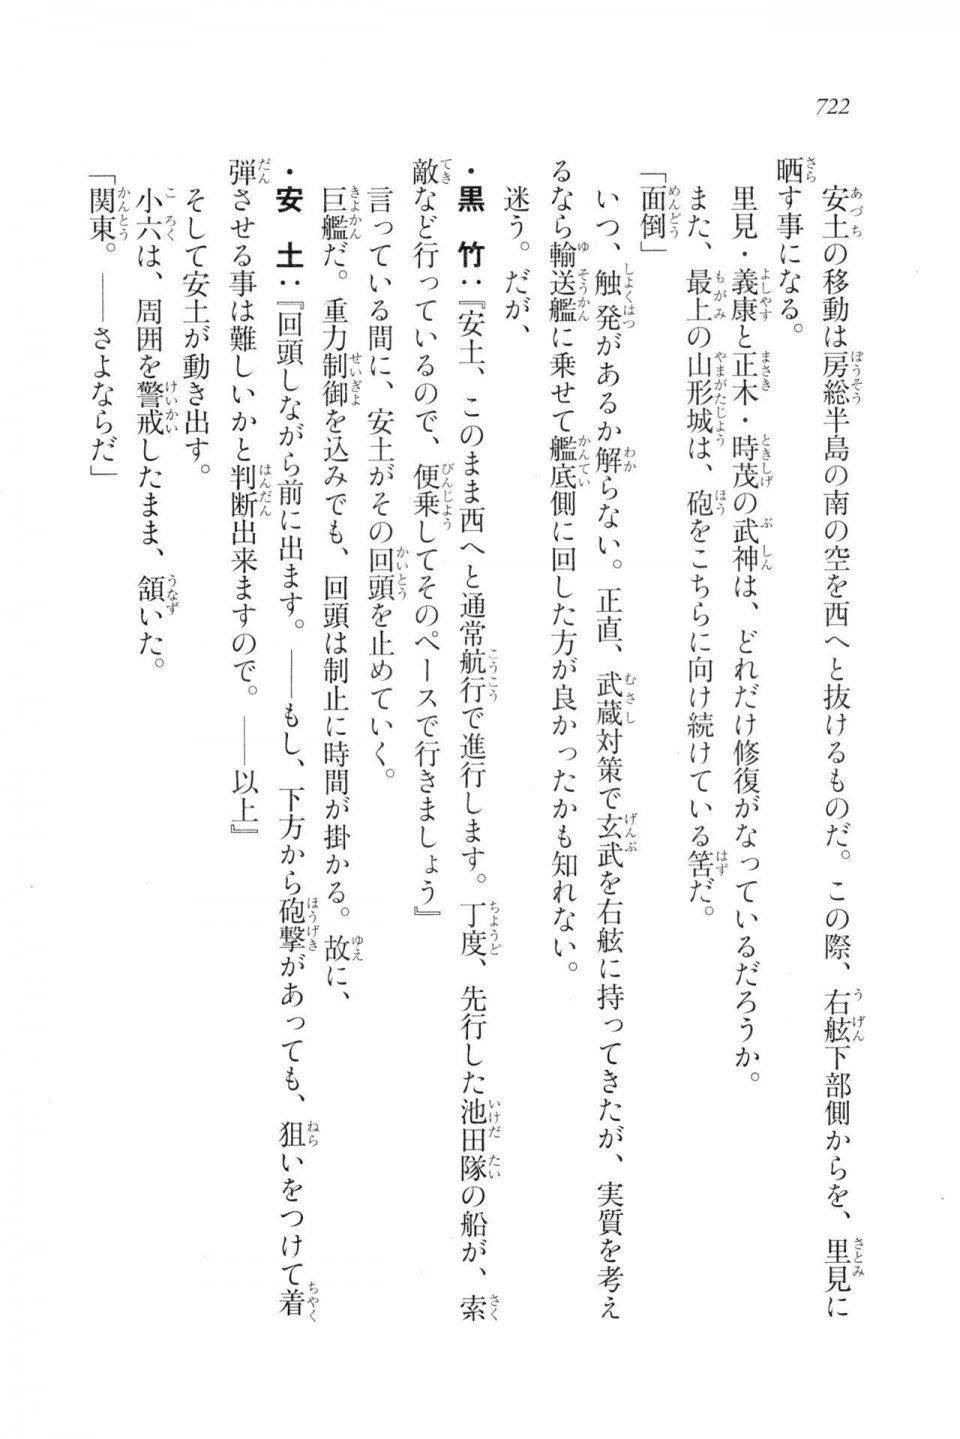 Kyoukai Senjou no Horizon LN Vol 20(8B) - Photo #722